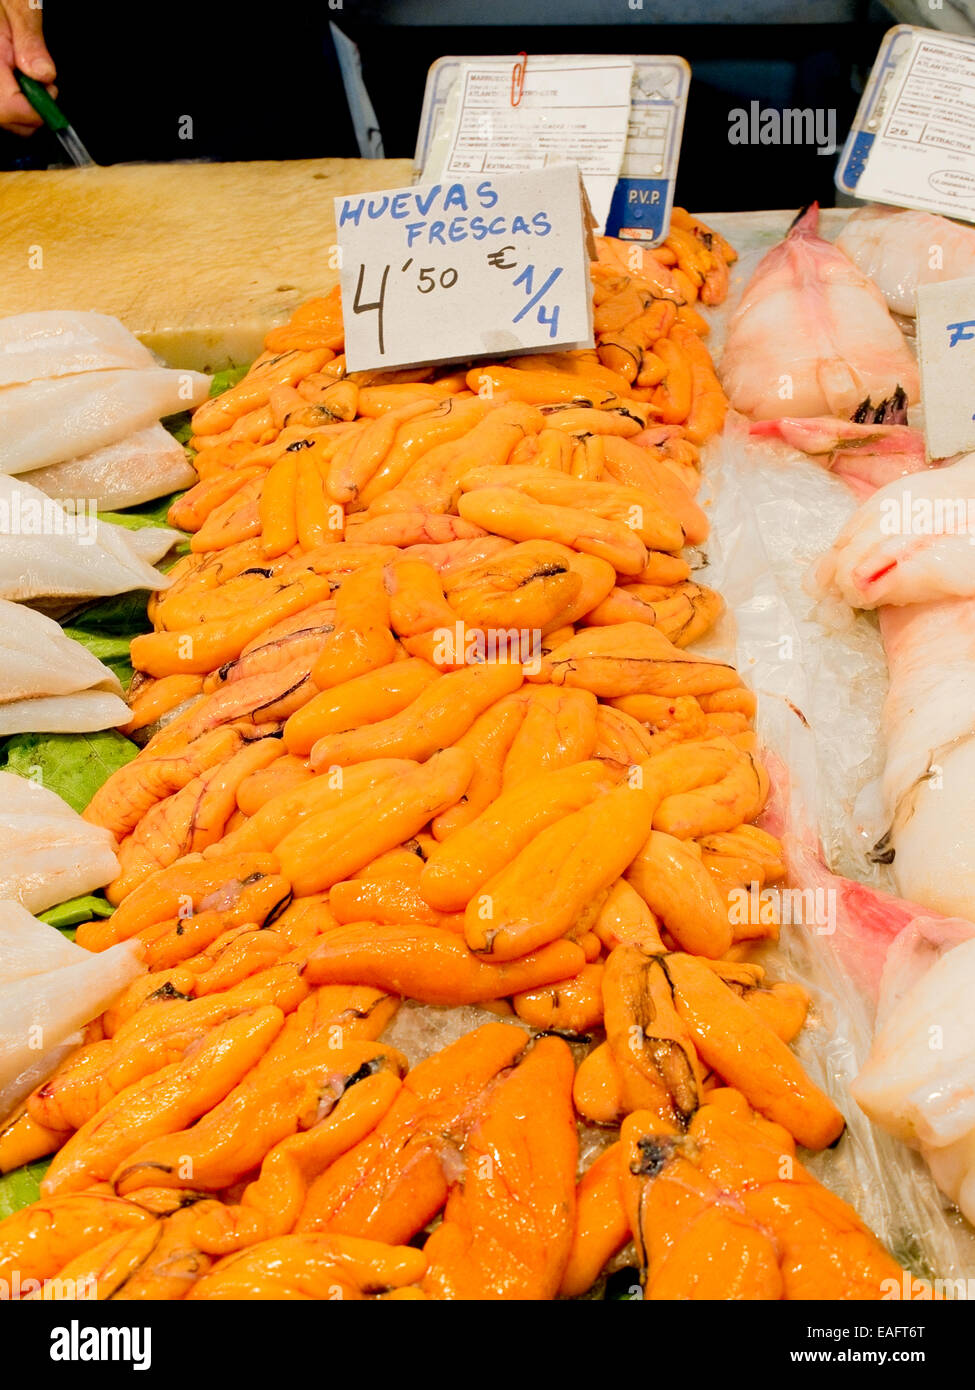 Frischer Fisch Rehe in einem Markt. (Poster in spanischer Sprache, die sagt: frische Fischrogen) Stockfoto